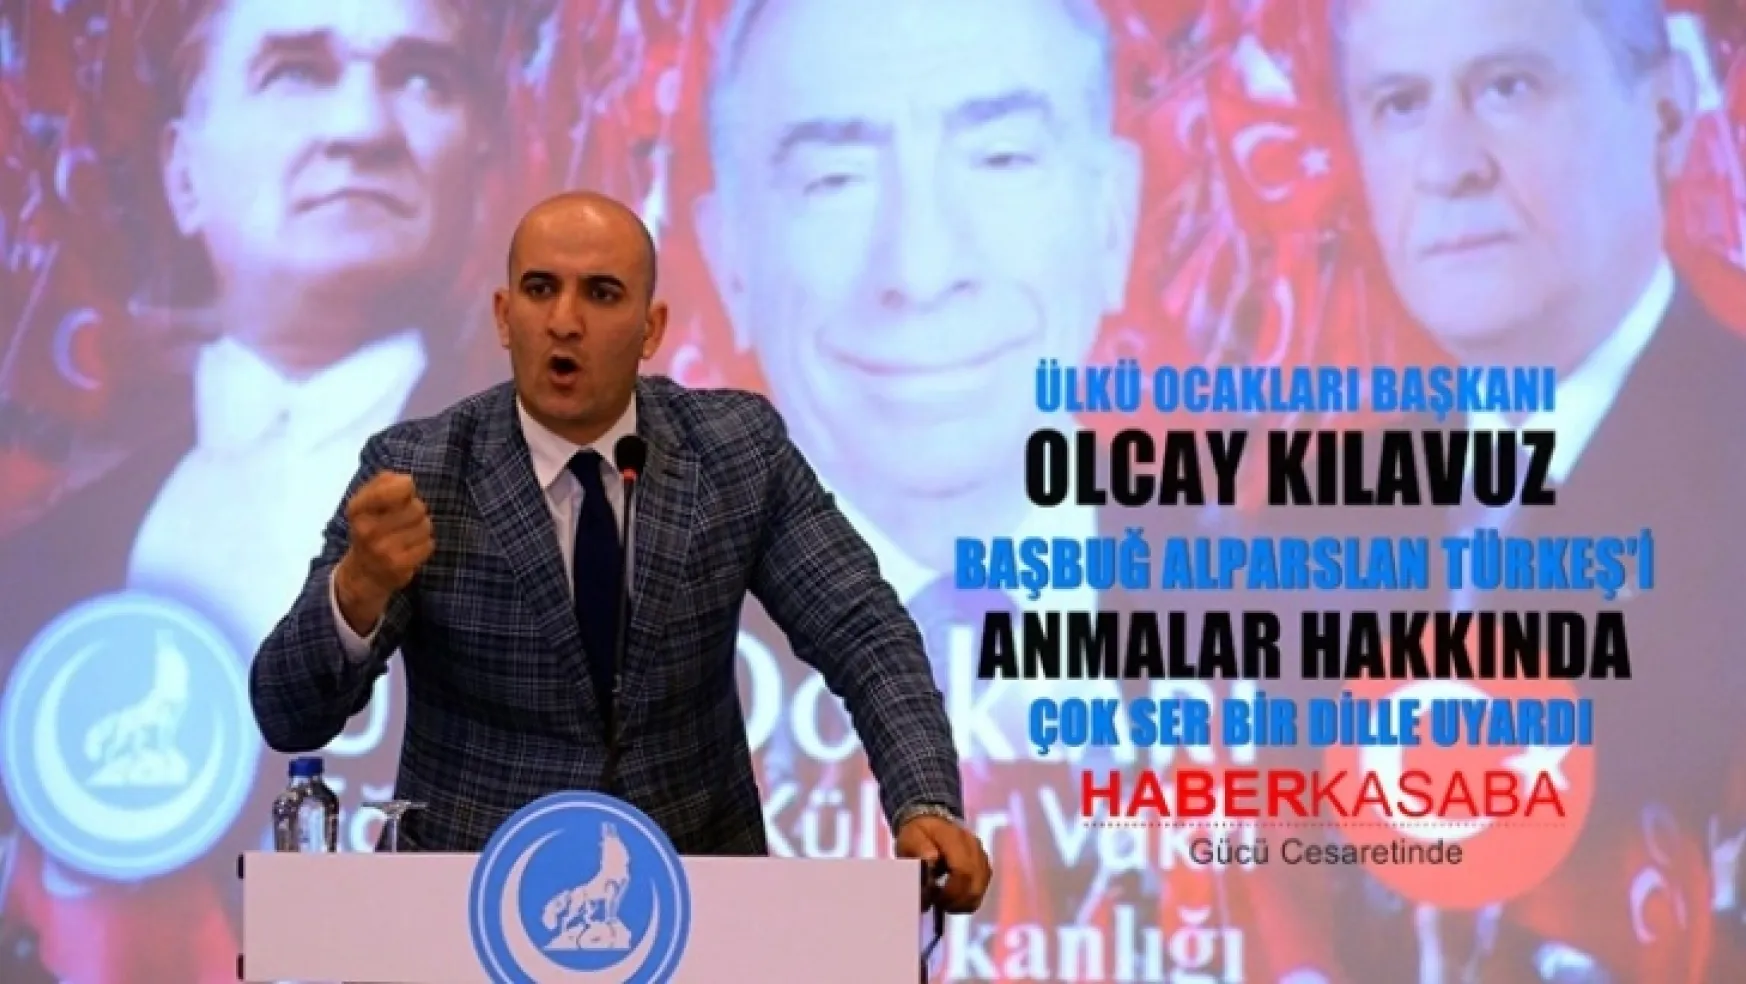 Ülkü Ocakları ve Başkanı Olcay Kılavuz'dan çok sert bir dille Türkeş açıklaması